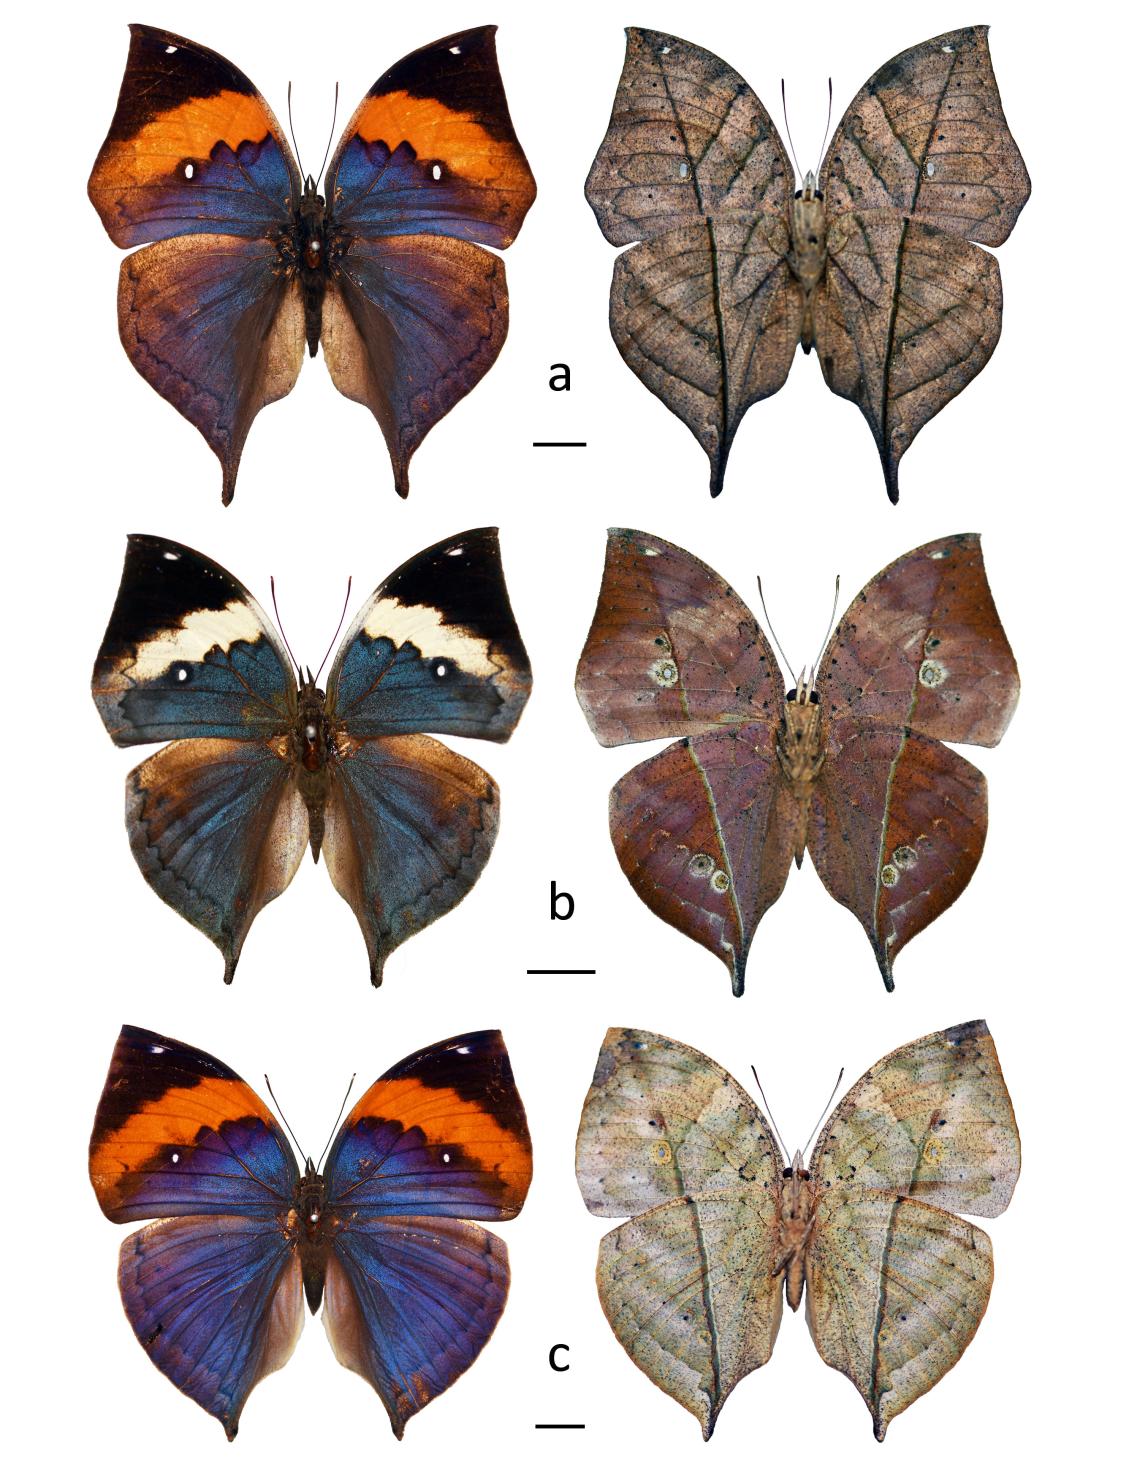 Figura 1. Algunas especies del género Kallima en vista dorsal (izquierda) y ventral (derecha) (escala = 1 cm). a. Kallima inachus (Doyère, 1840), b. K. albofasciata Moore, 1877, c. K. paralekta (Horsfield, 1829). Colección de Insectos Exóticos MNHN.